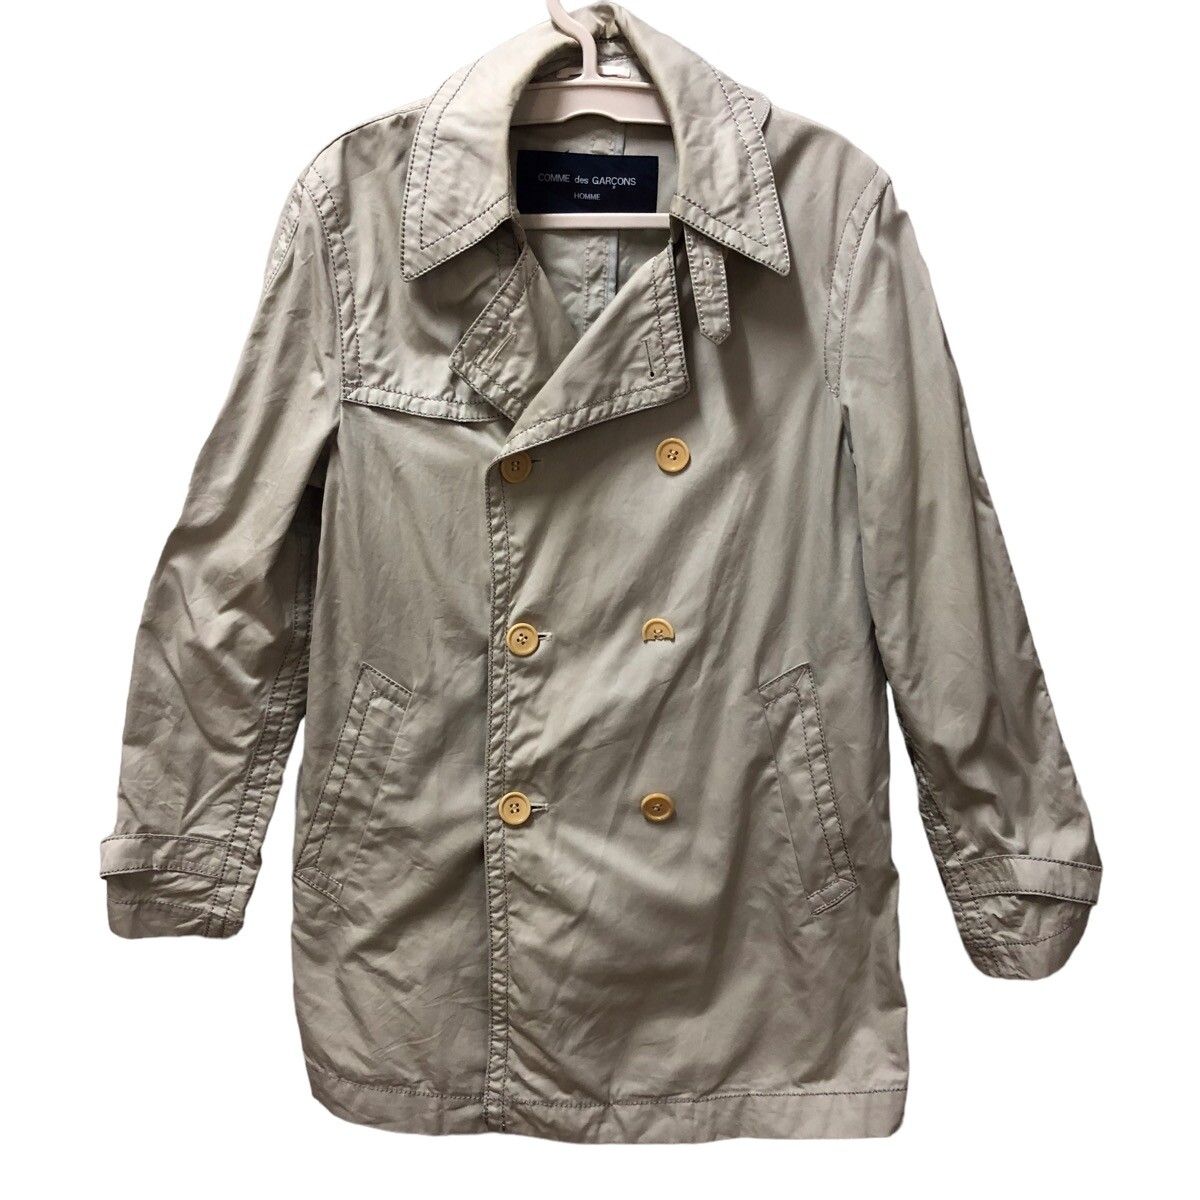 AD2005 Comme des garcons homme cotton trench coat - 1